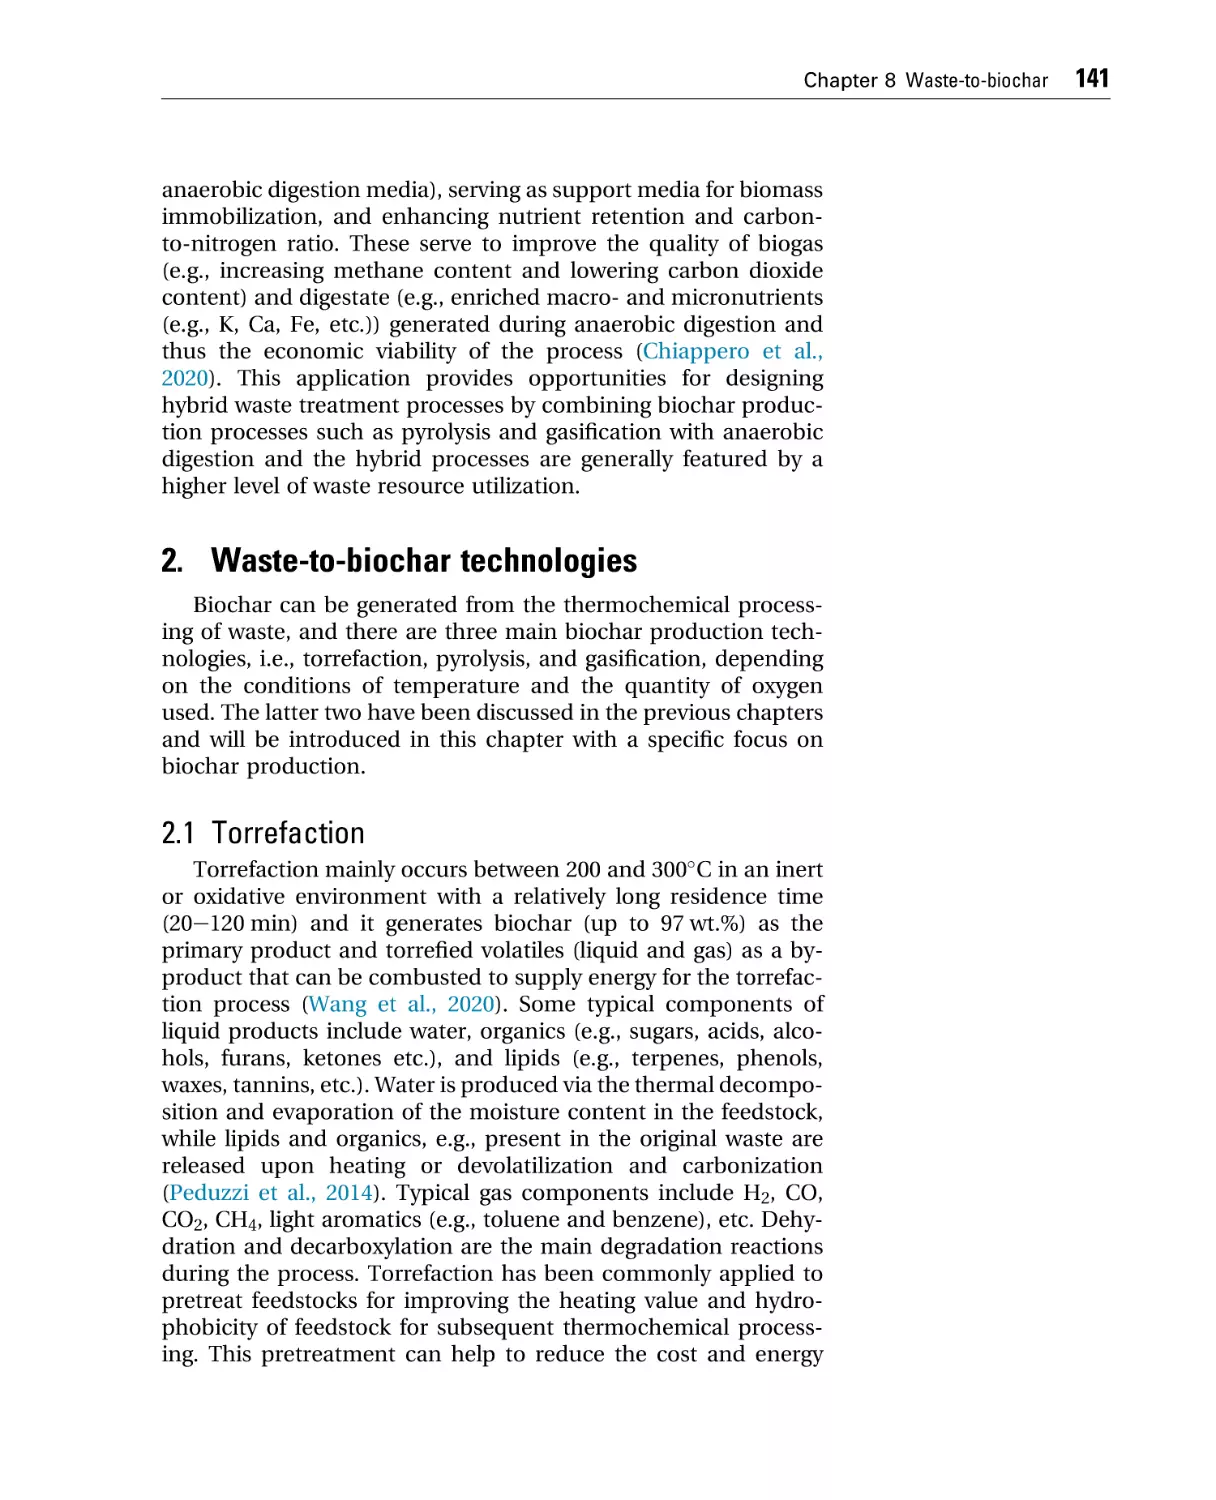 2. Waste-to-biochar technologies
2.1 Torrefaction